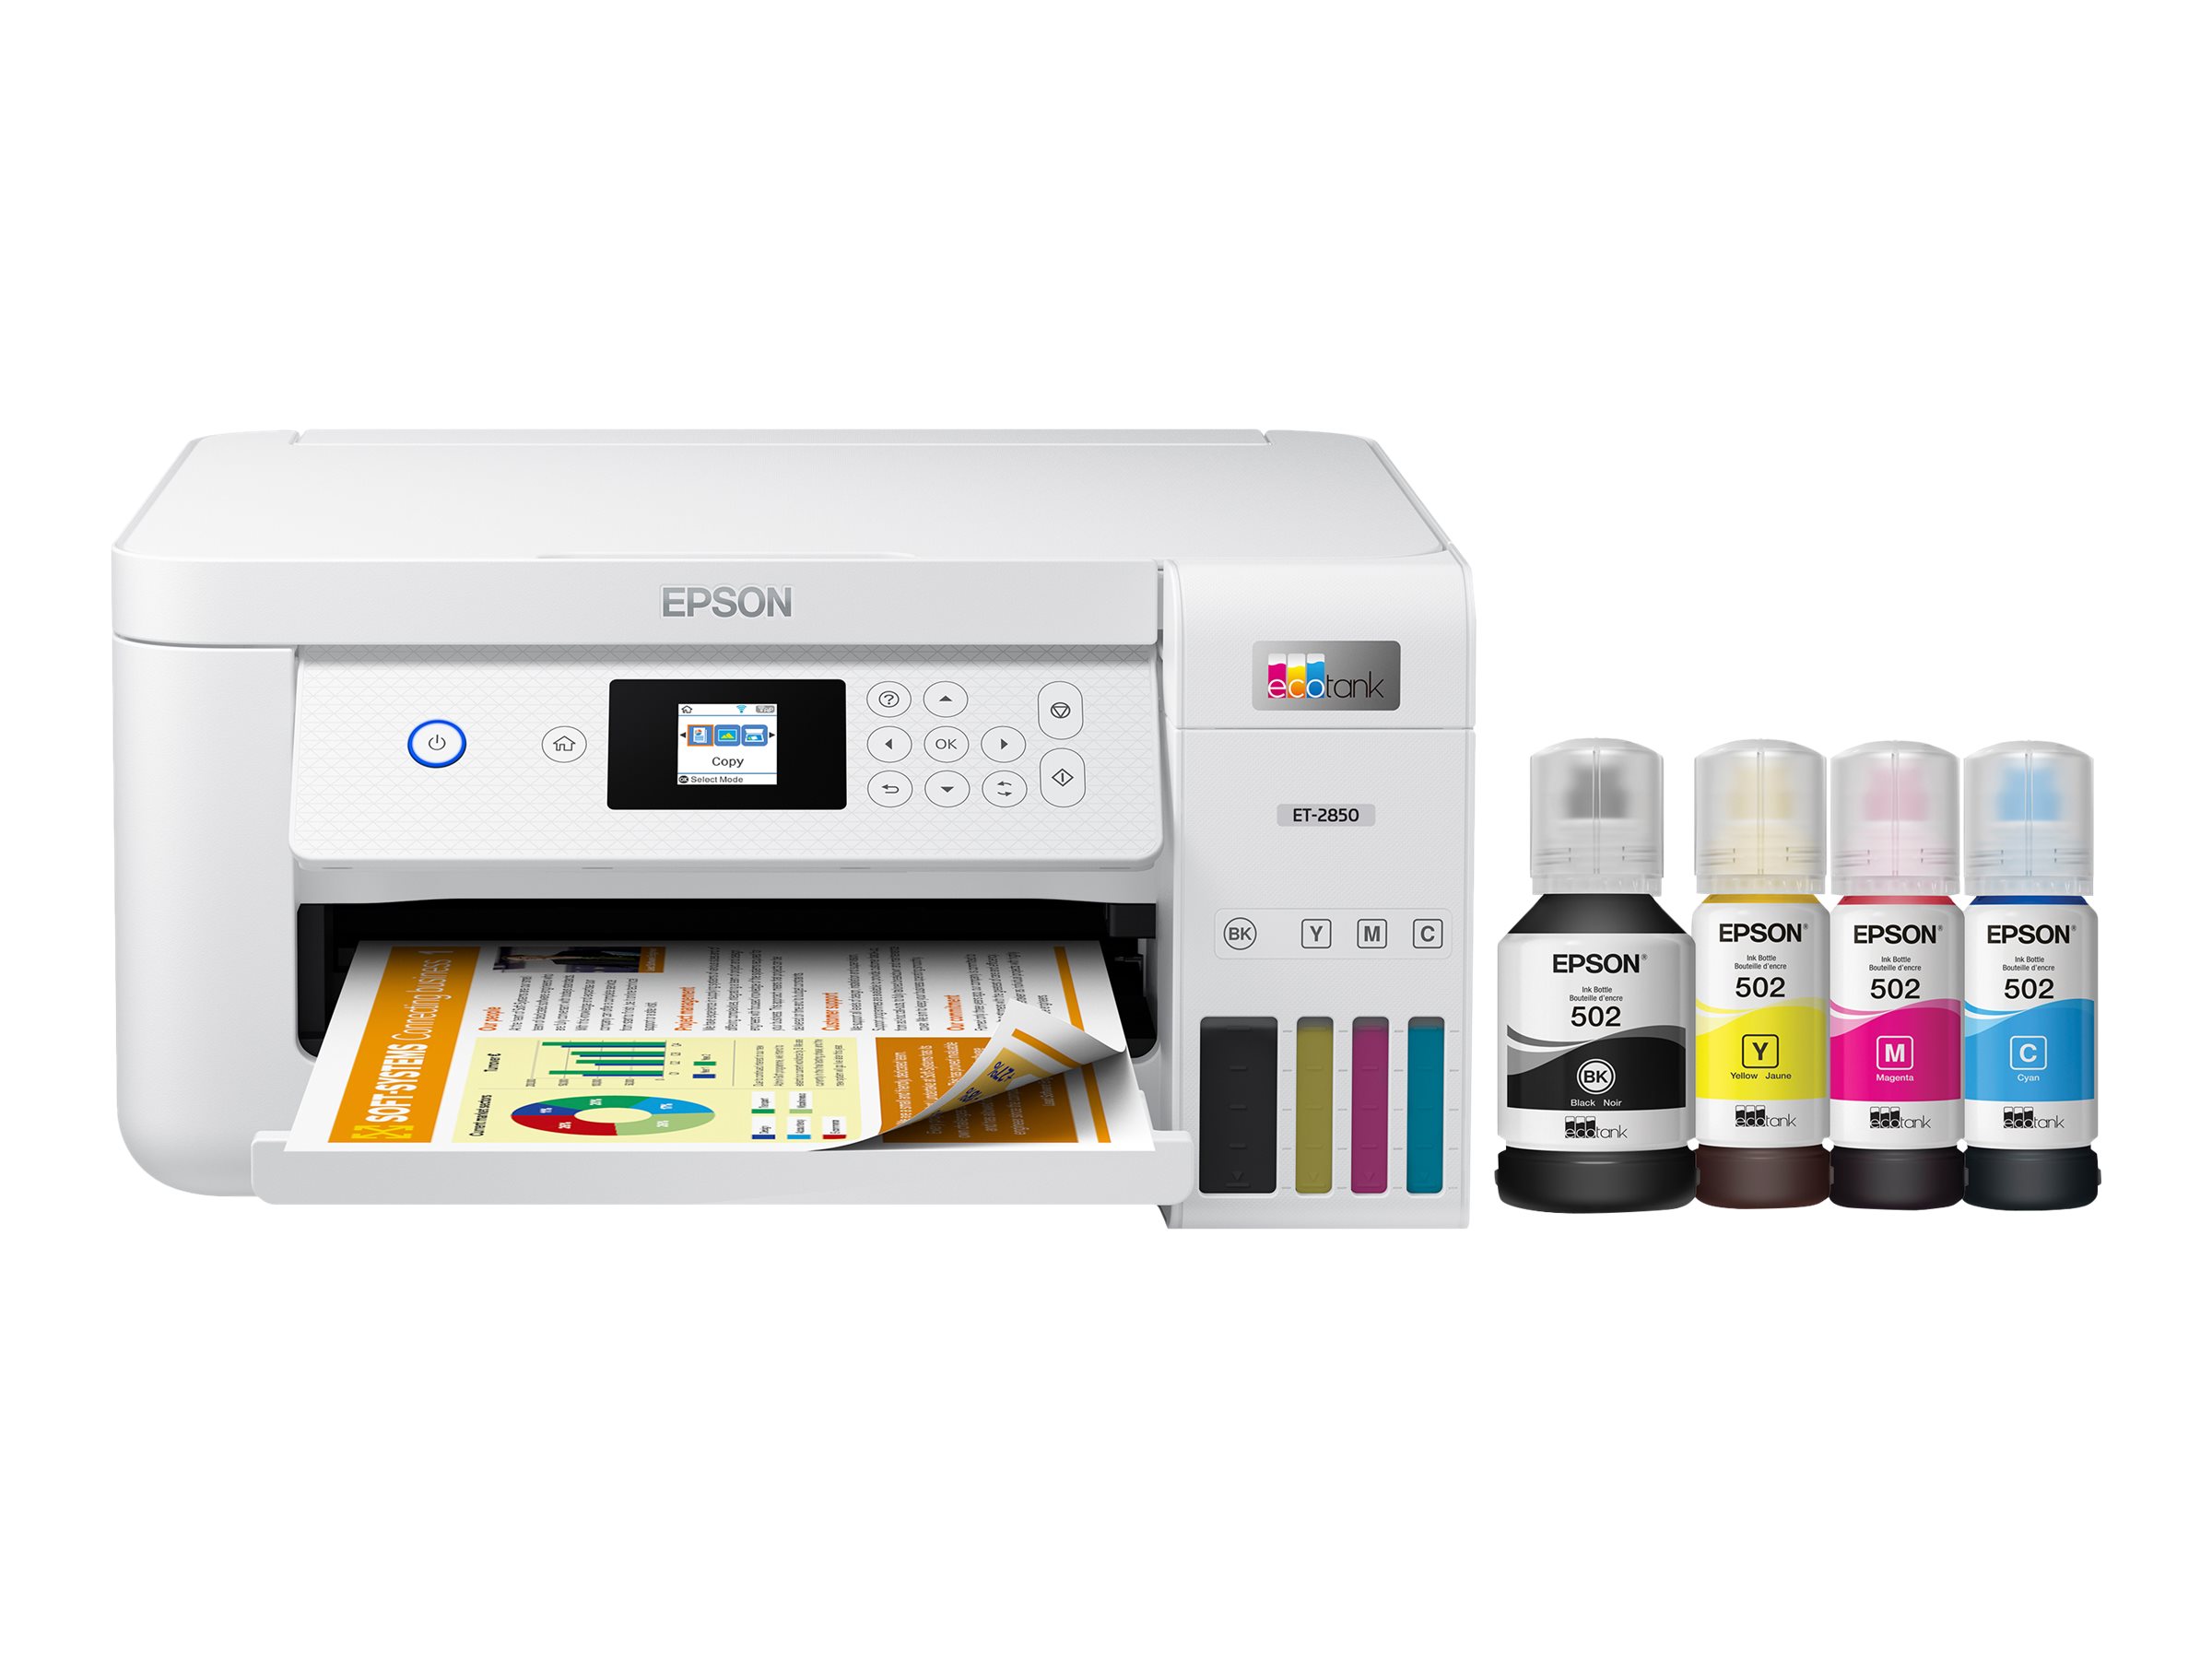 Epson EcoTank Wireless All-in-One Colour Printer - White - ET-2850